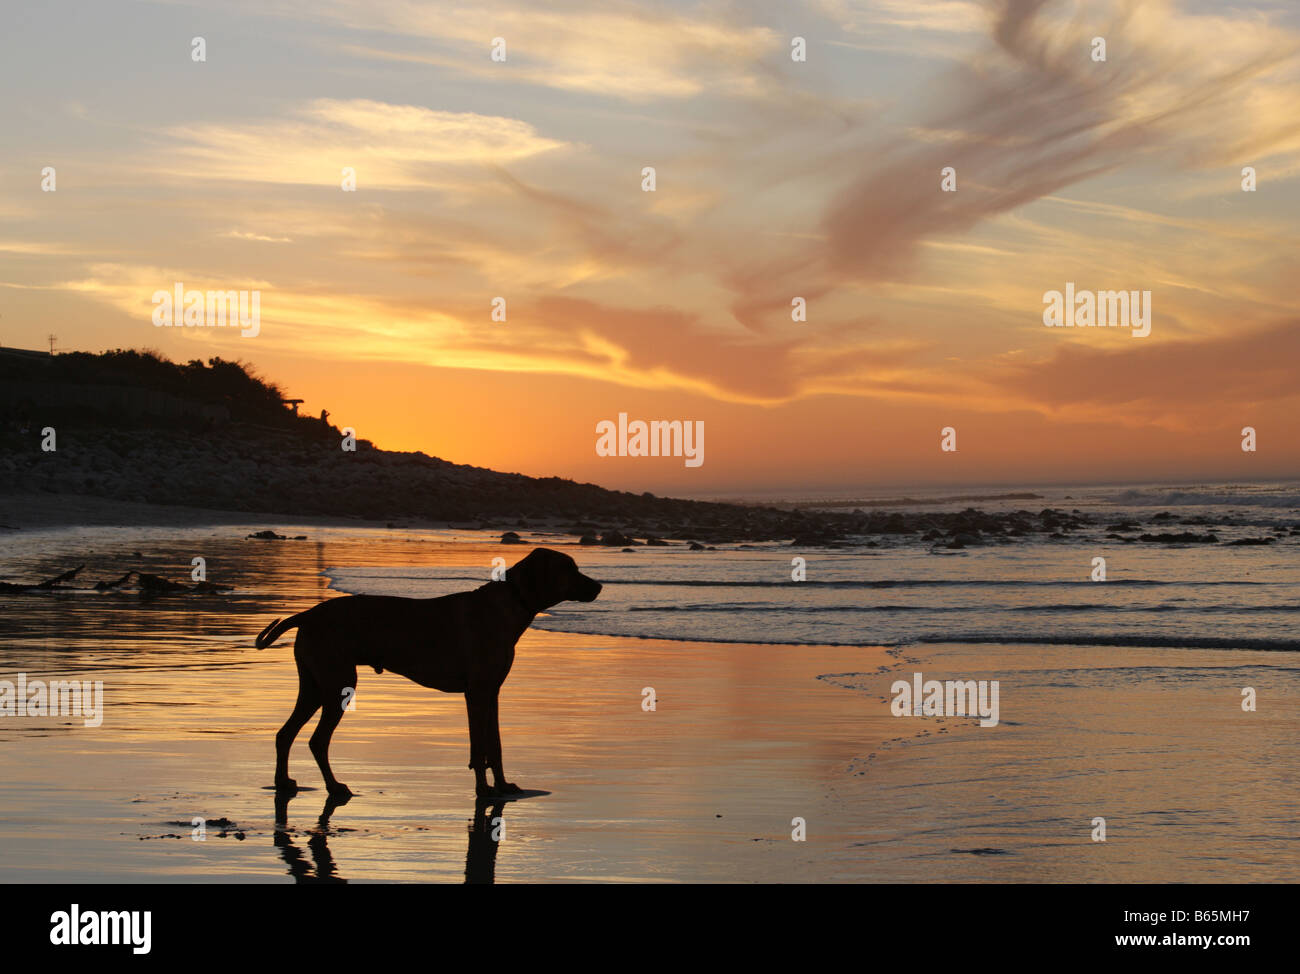 Silhouette des Hundes mit Sonnenuntergang Hintergrund, Cape Town, Südafrika Stockfoto